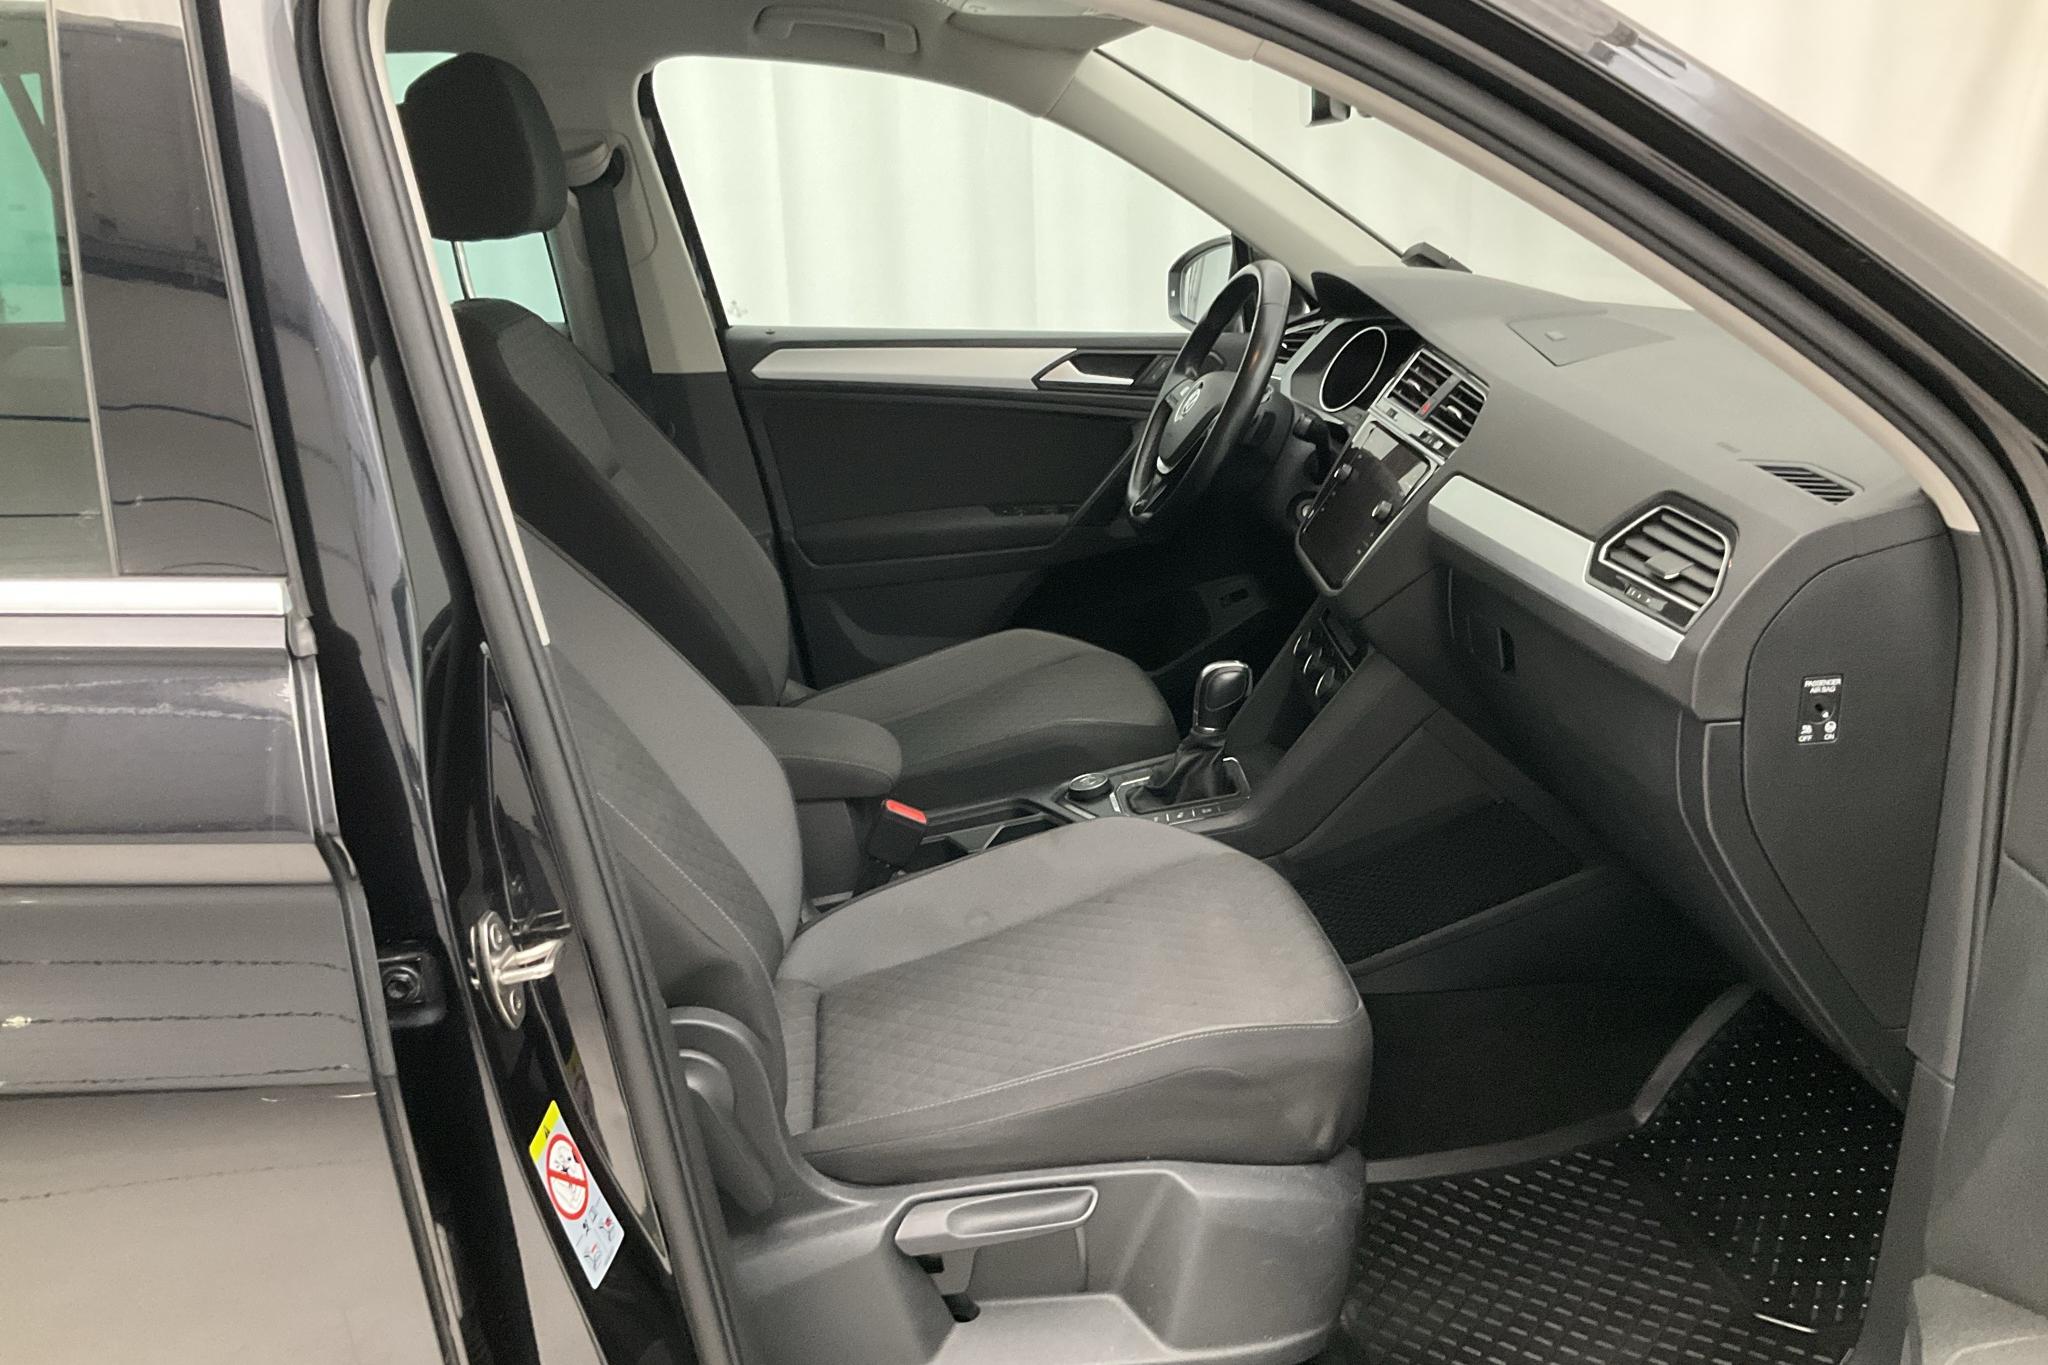 VW Tiguan 2.0 TSI 4MOTION (190hk) - 10 673 mil - Automat - svart - 2019